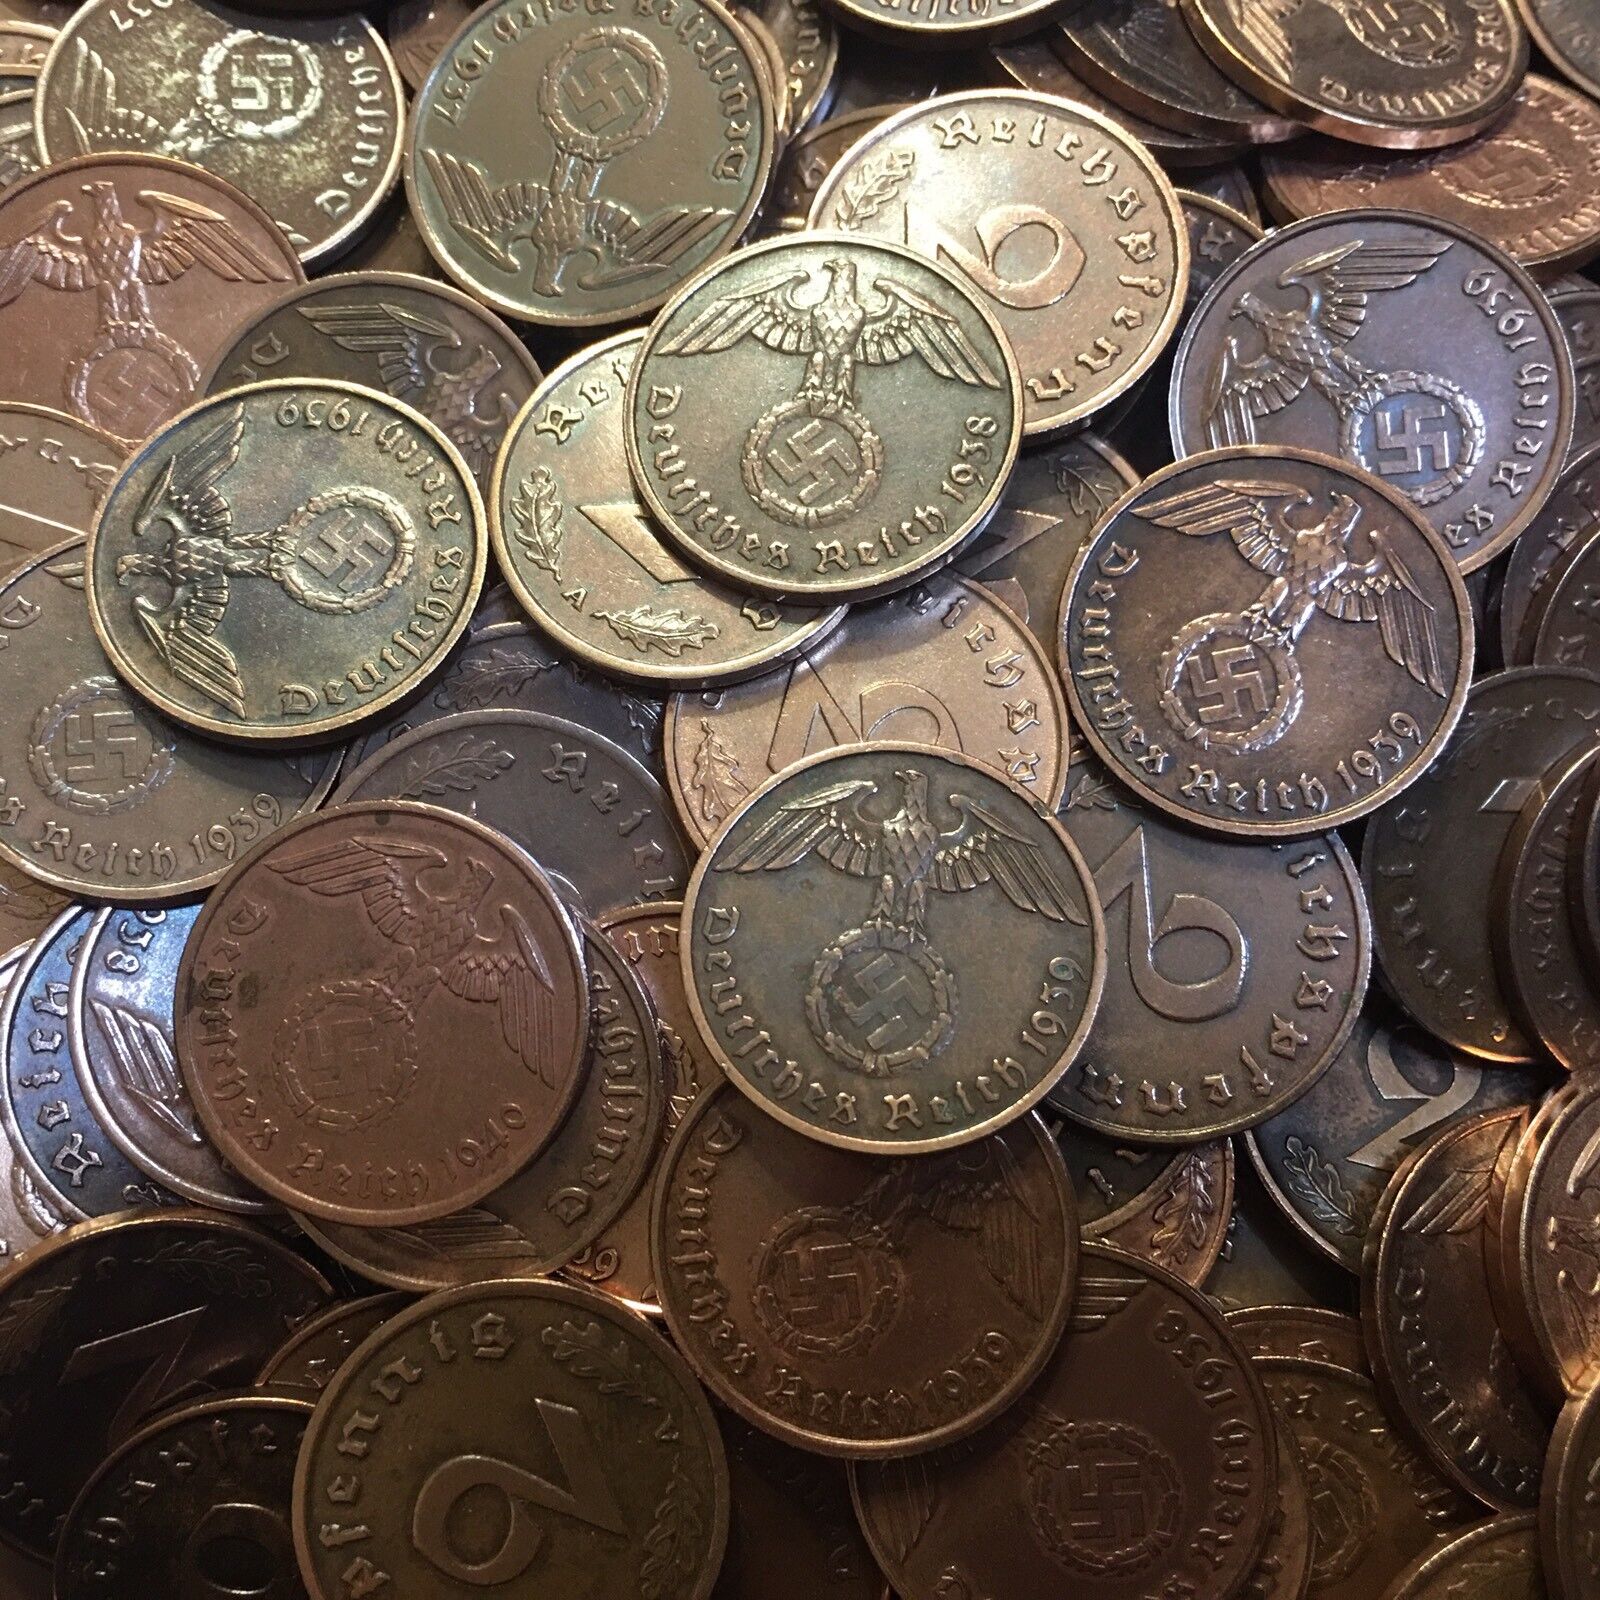 Rare WW2 German 2 RP Reichspfennig 3rd Reich Bronze Nazi Coin Buy 3 Get 1 Free Без бренда - фотография #5